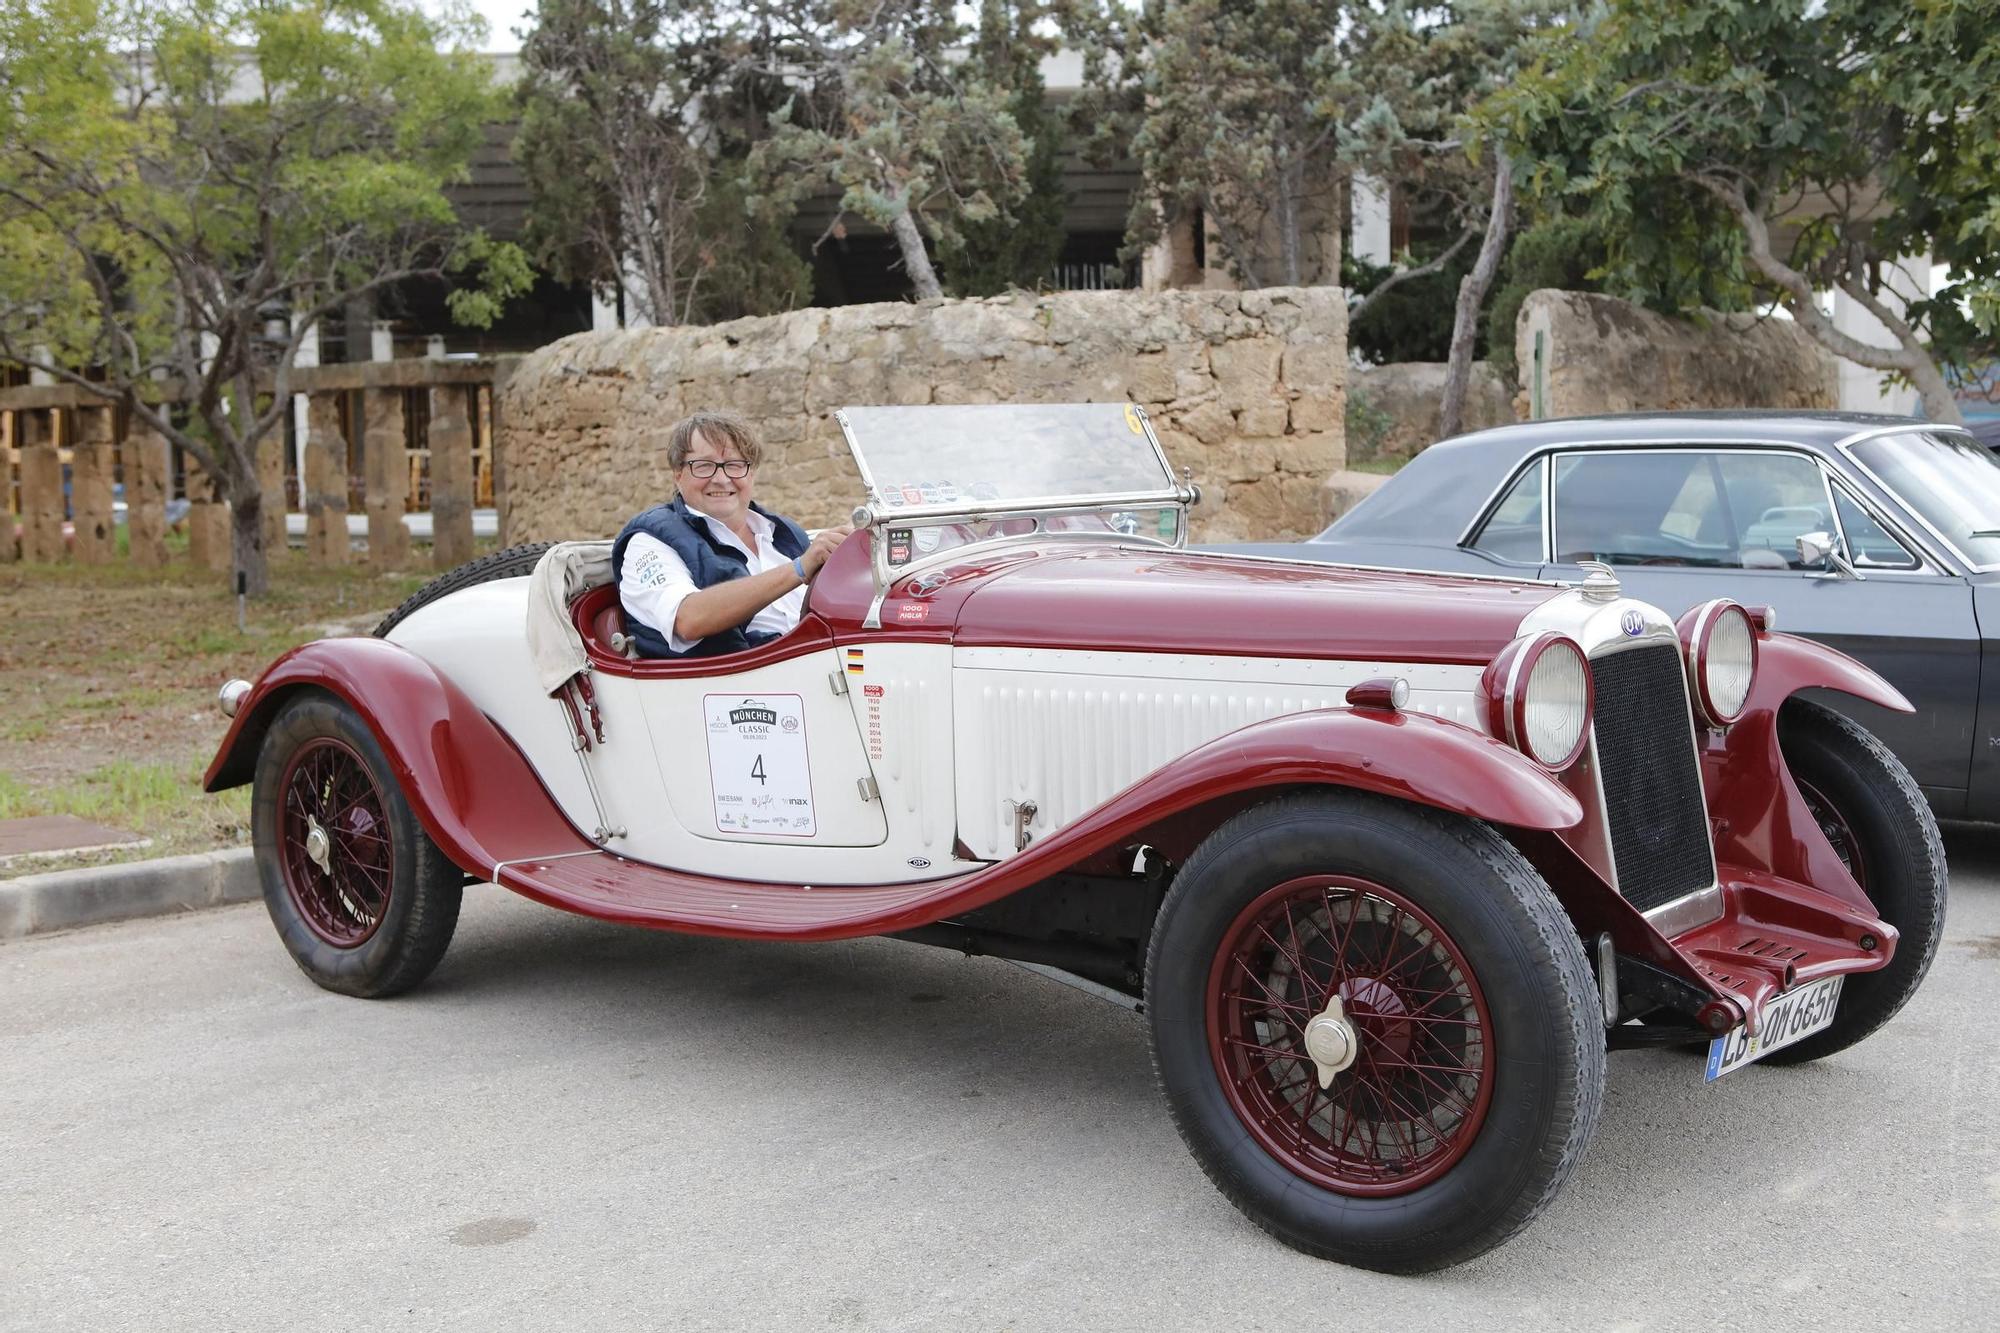 Autofreunde aufgepasst: Bei der Mallorca Car Week sind Oldtimer zu sehen